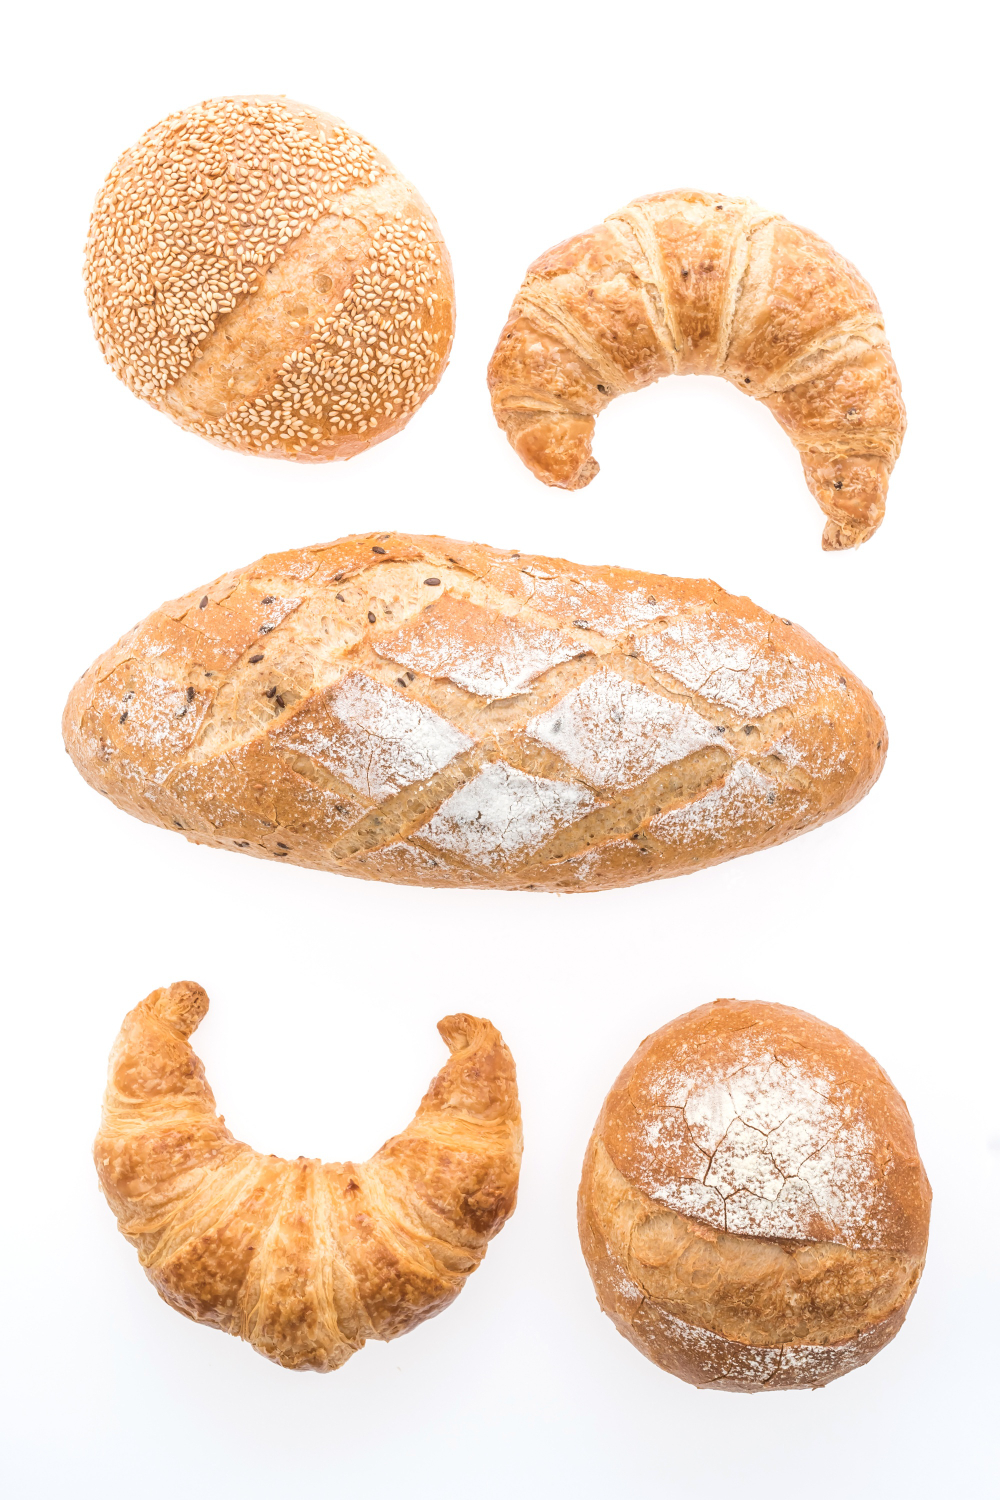 パン消費期限の過ぎた場合の潜在的なリスクと影響